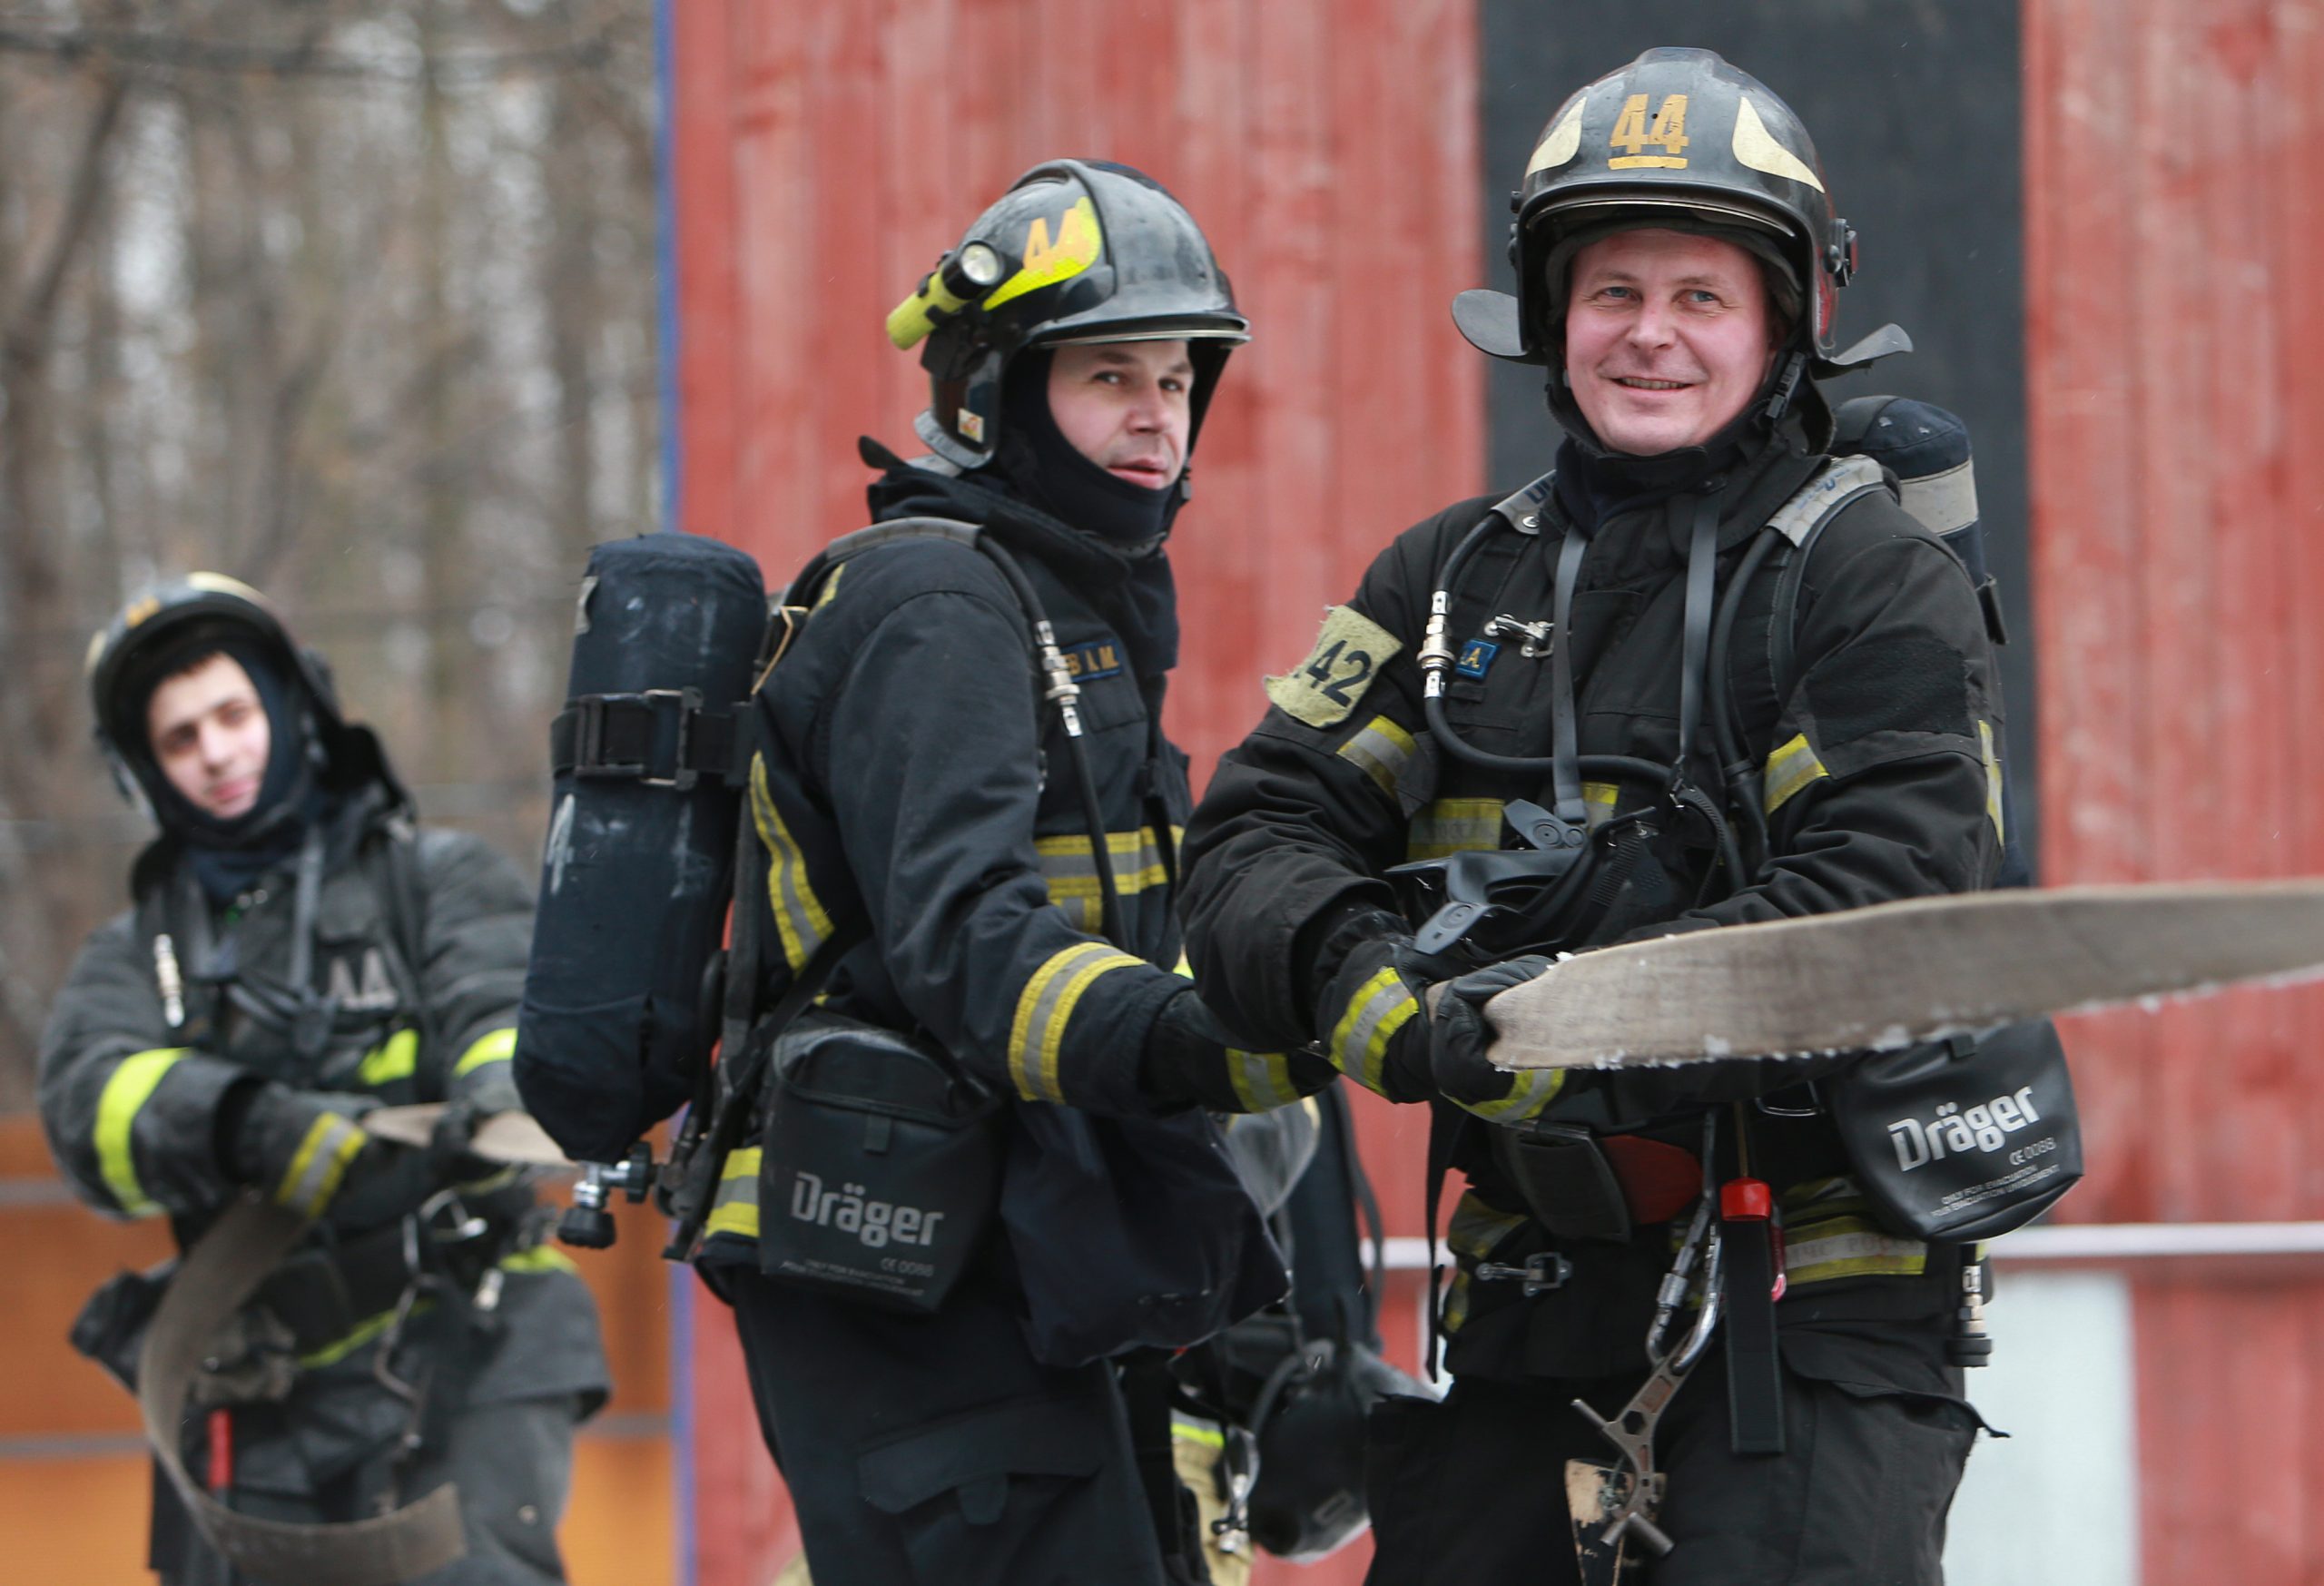 29 января 2021 года. Пожарные Александр Горбачев и Виталий Бурлий (слева направо) выполняют задание на тренировочной площадке. Фото: Наталия Нечаева